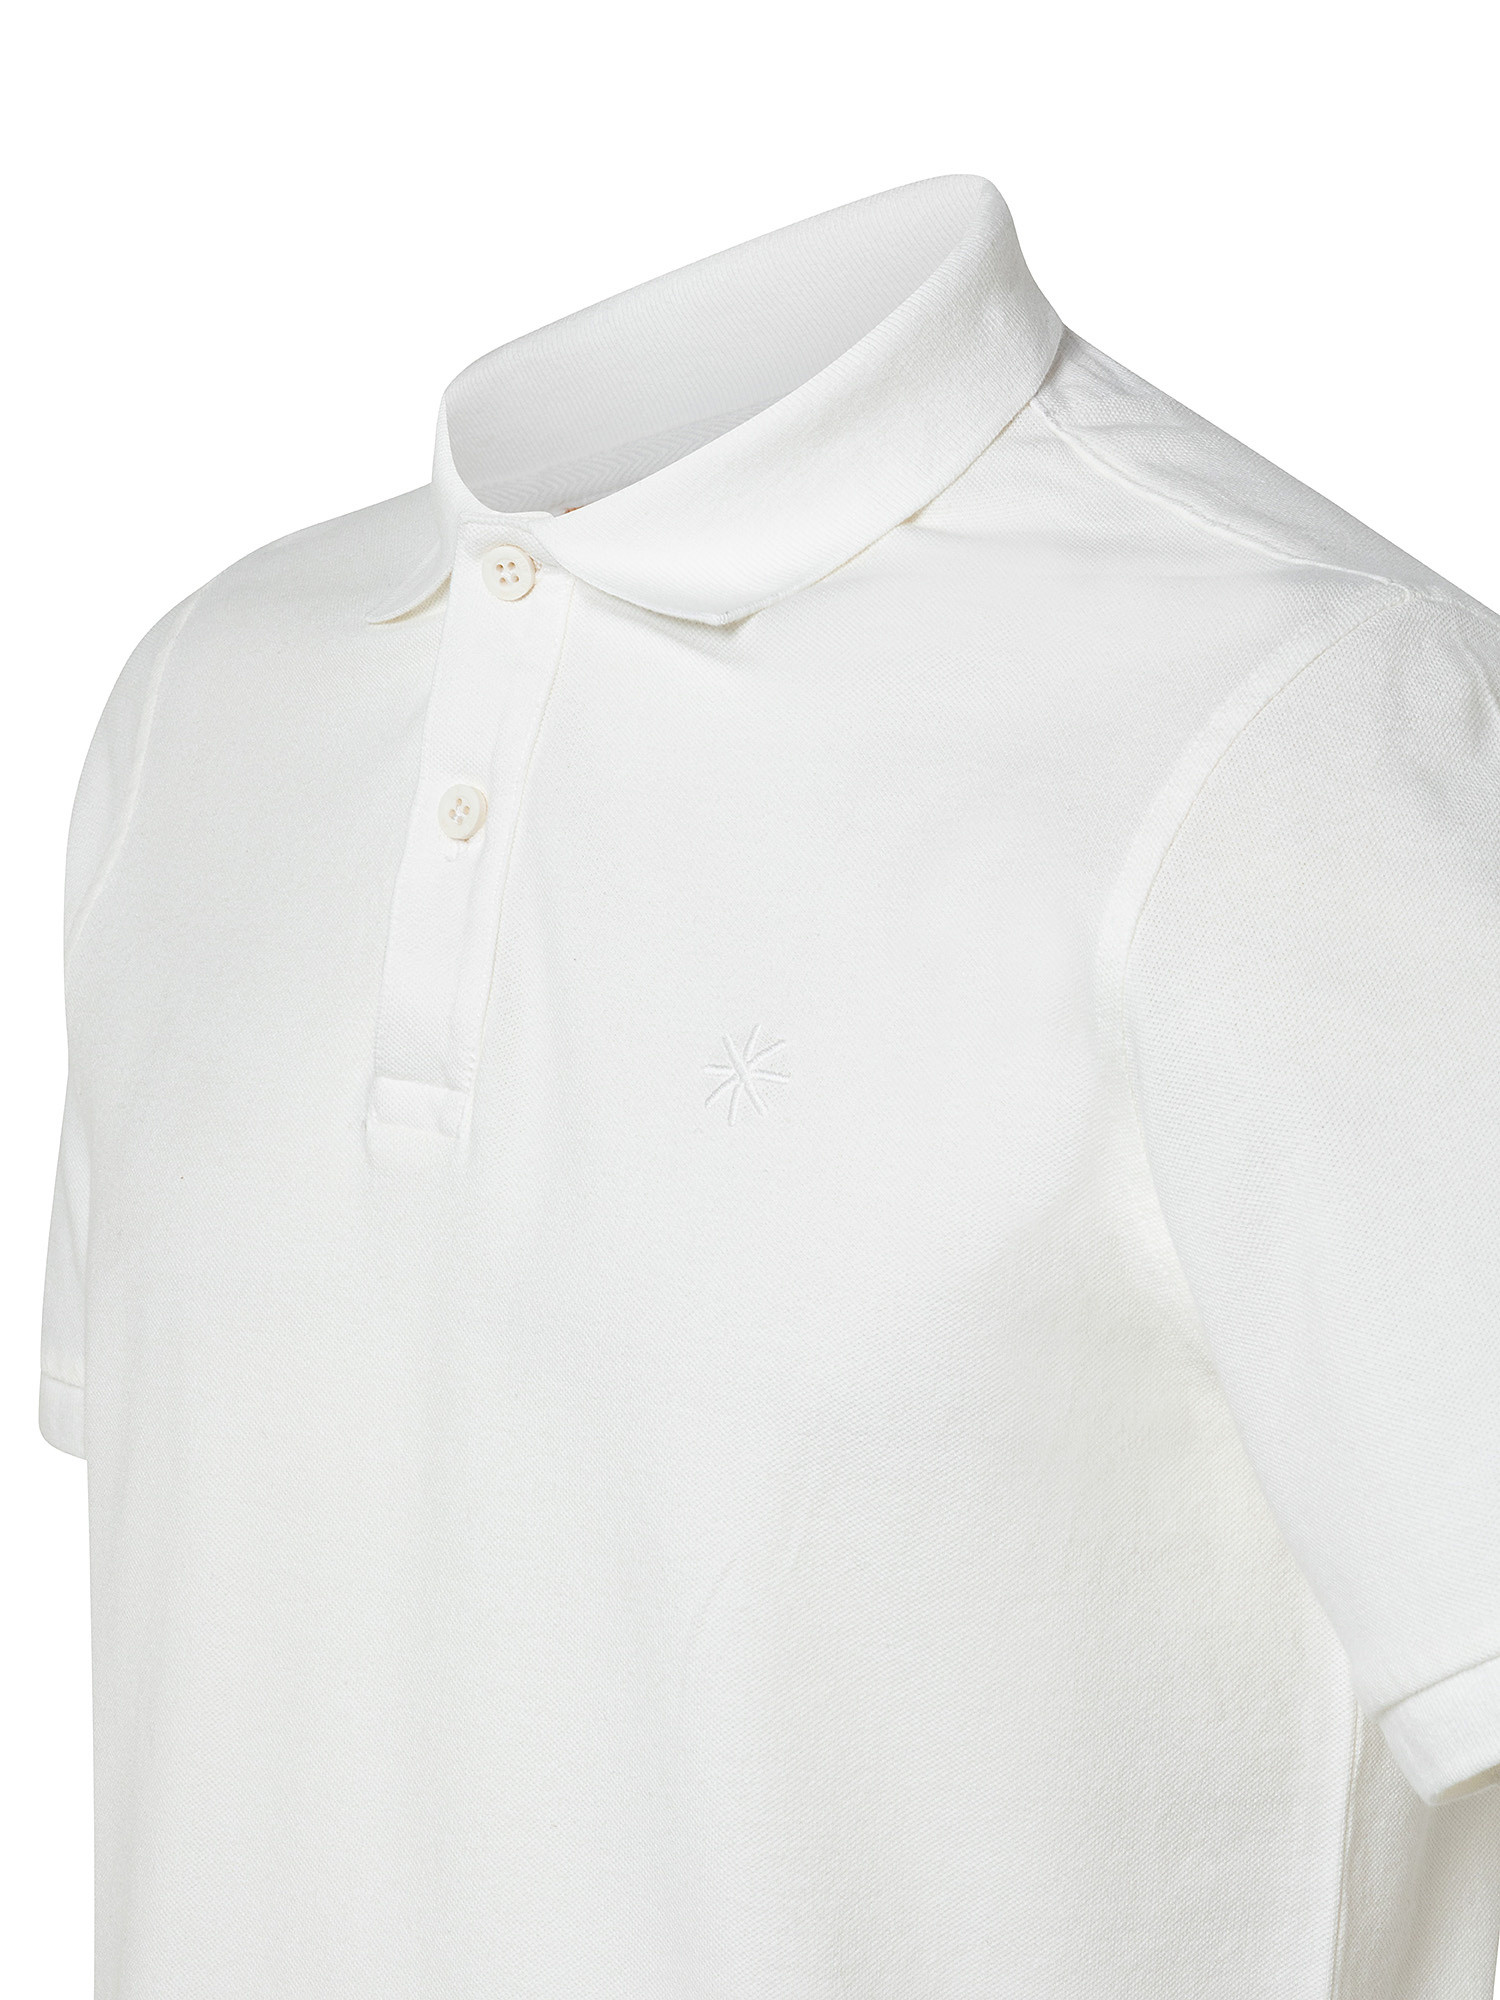 Short sleeve polo shirt, White, large image number 2